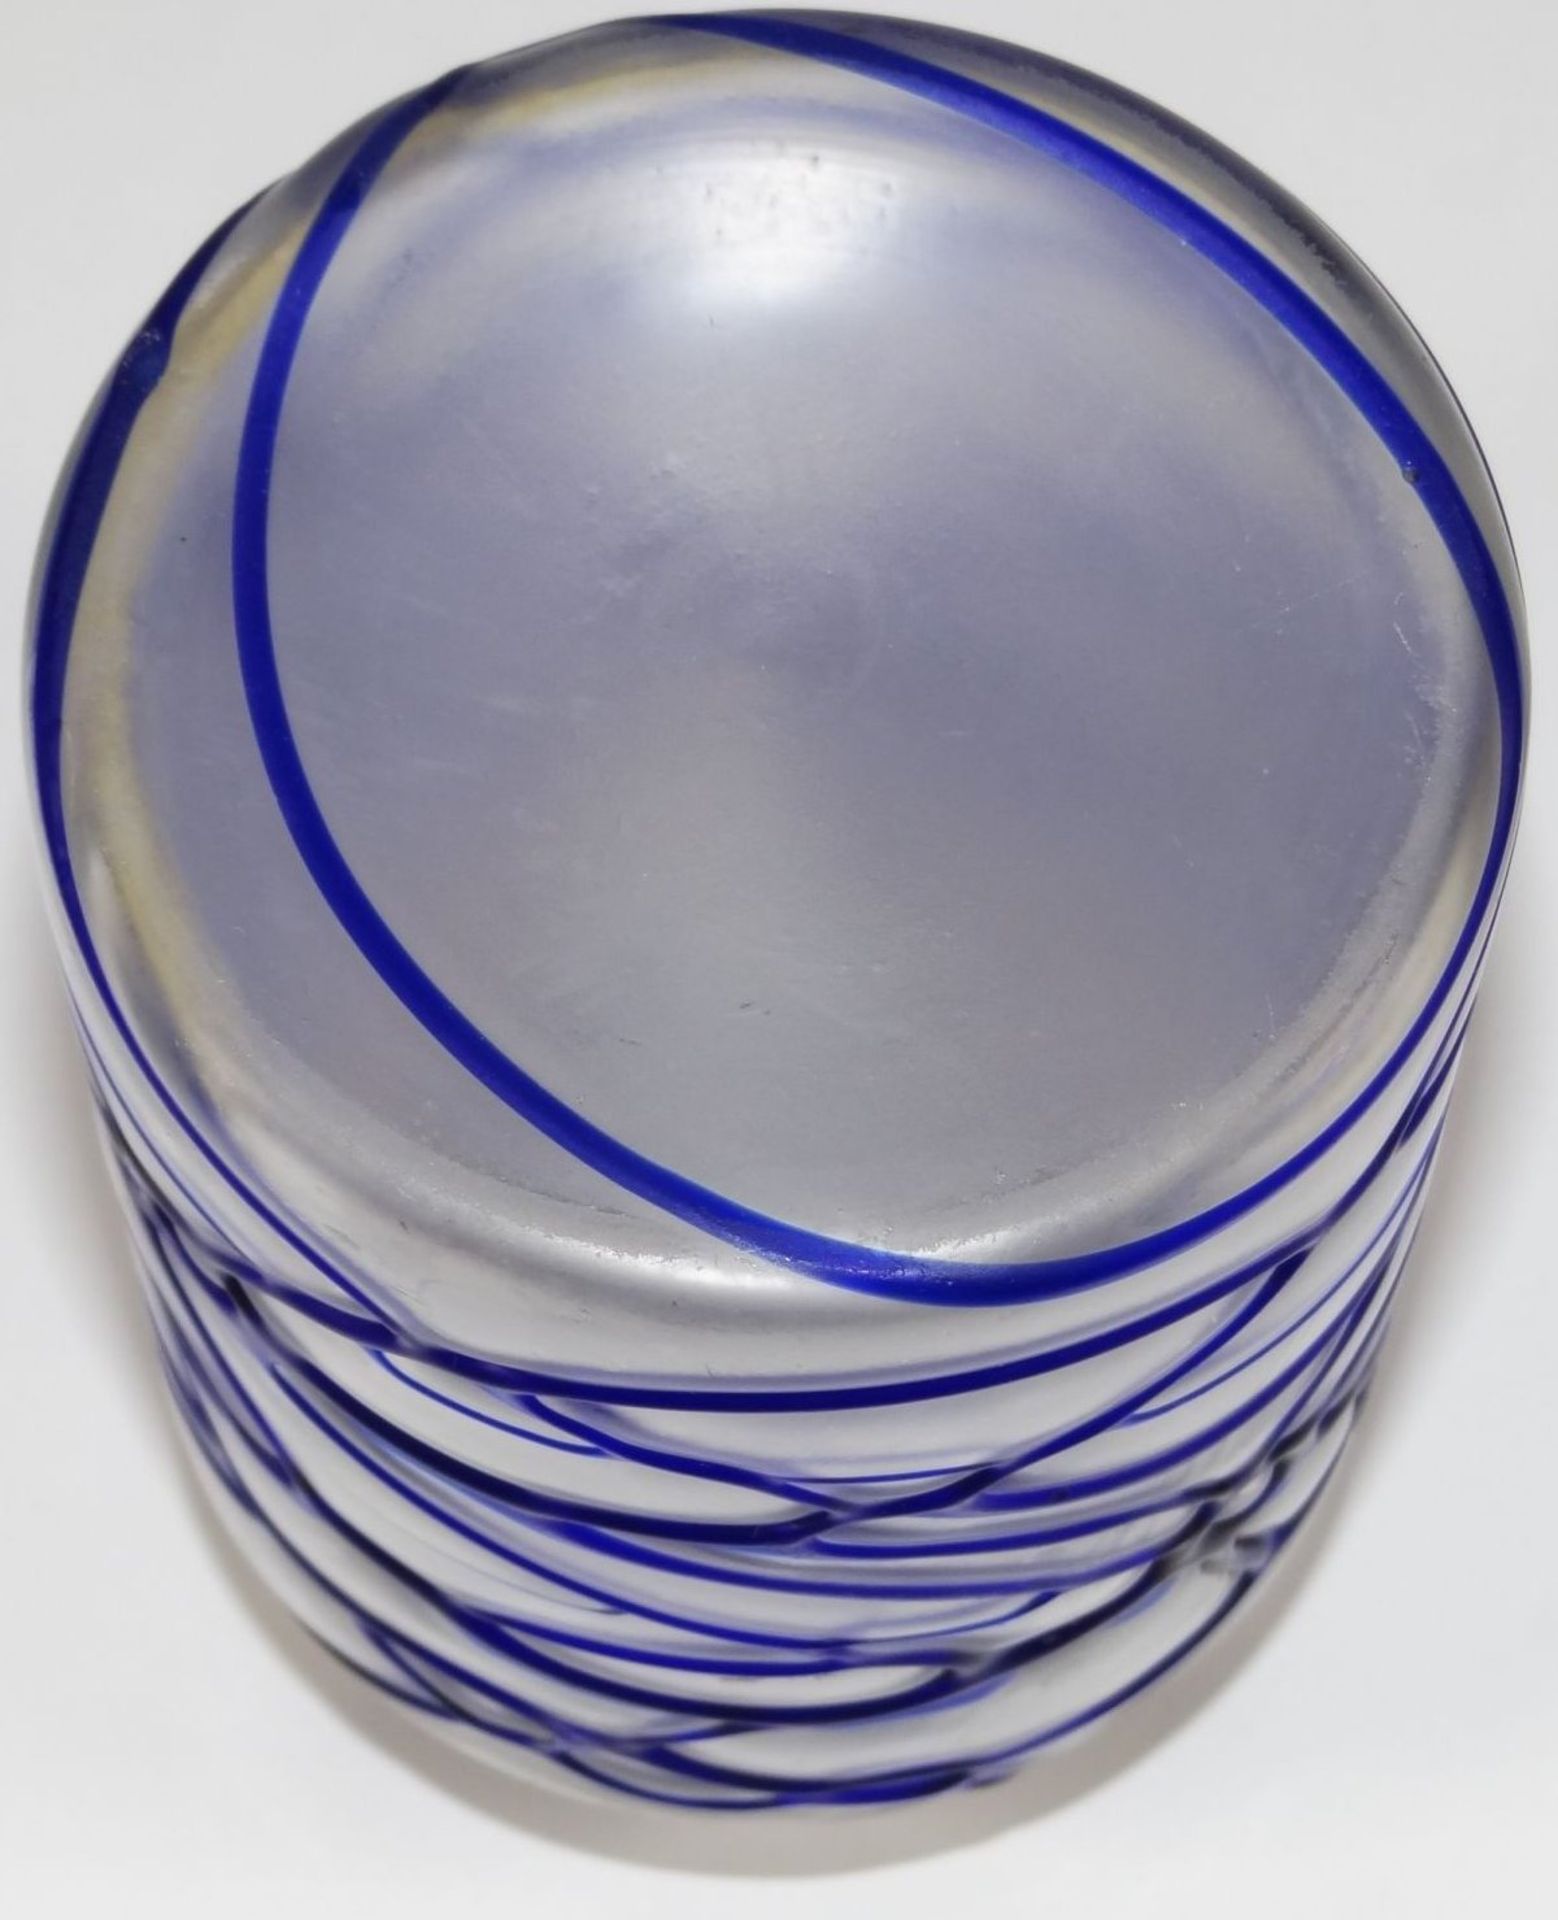 Milchglasdose mit aufgelegten blauen Fäden, Metallmontur kyrillisch beschriftet, H-15 cm, D-8,5 - Bild 6 aus 7